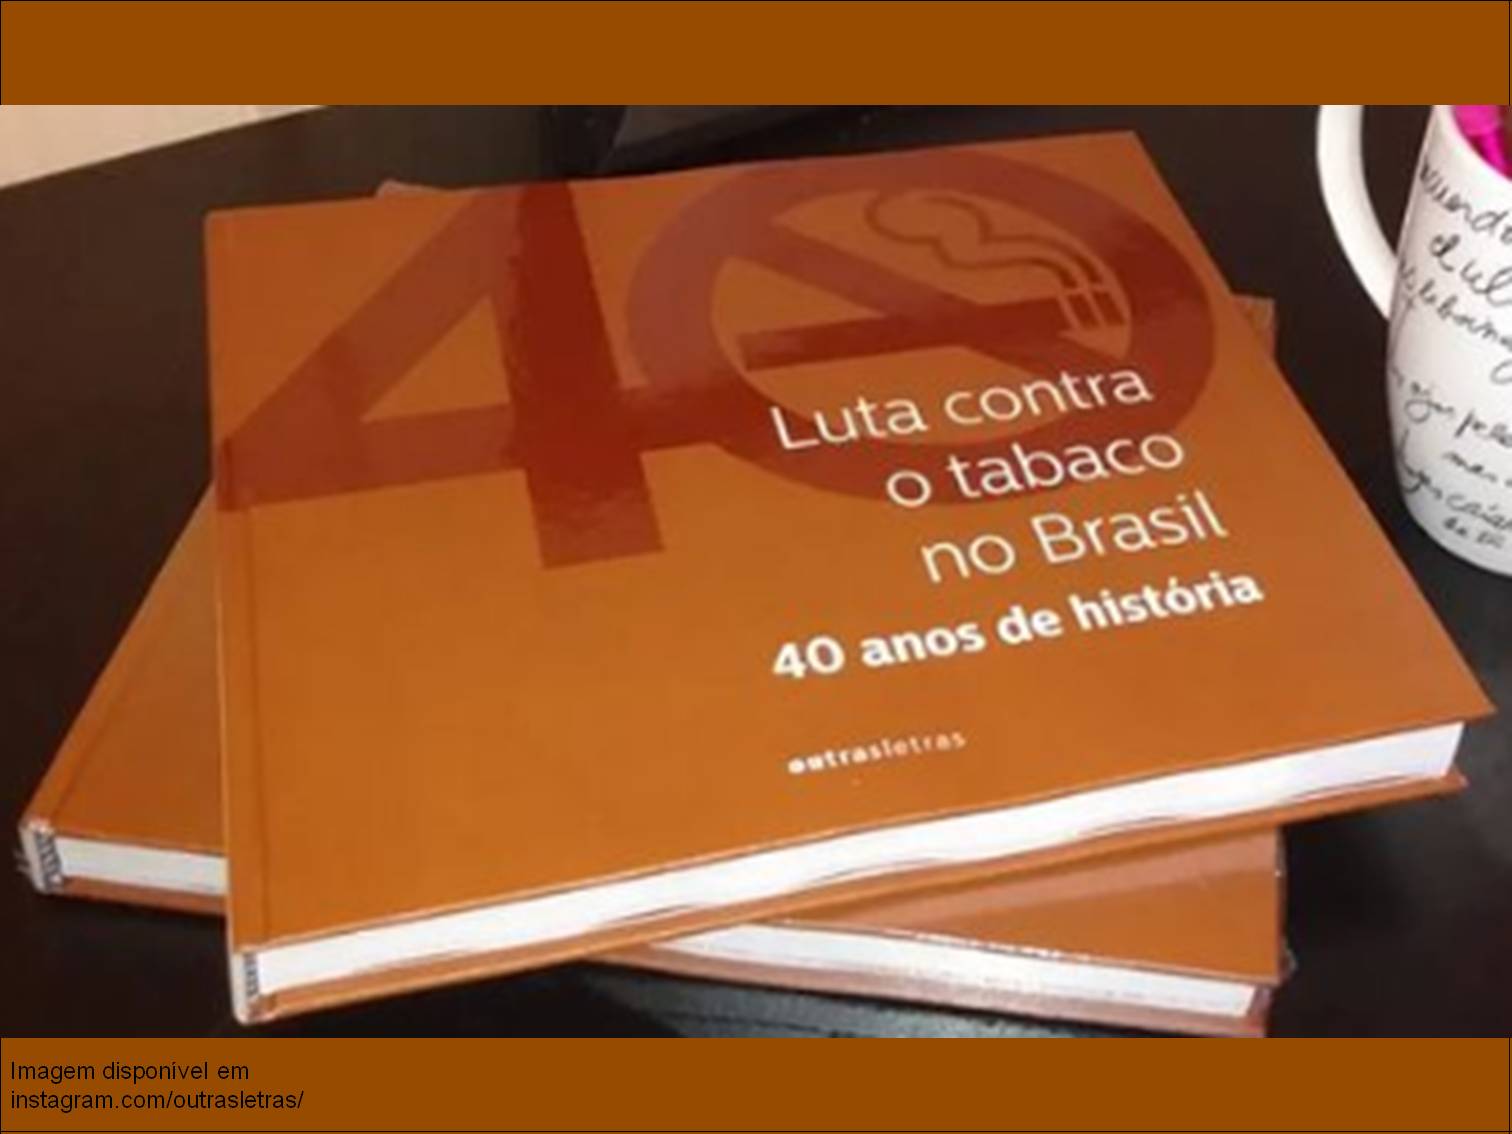 Capa do livro "Luta contra o tabaco no Brasil: 40 anos de história"